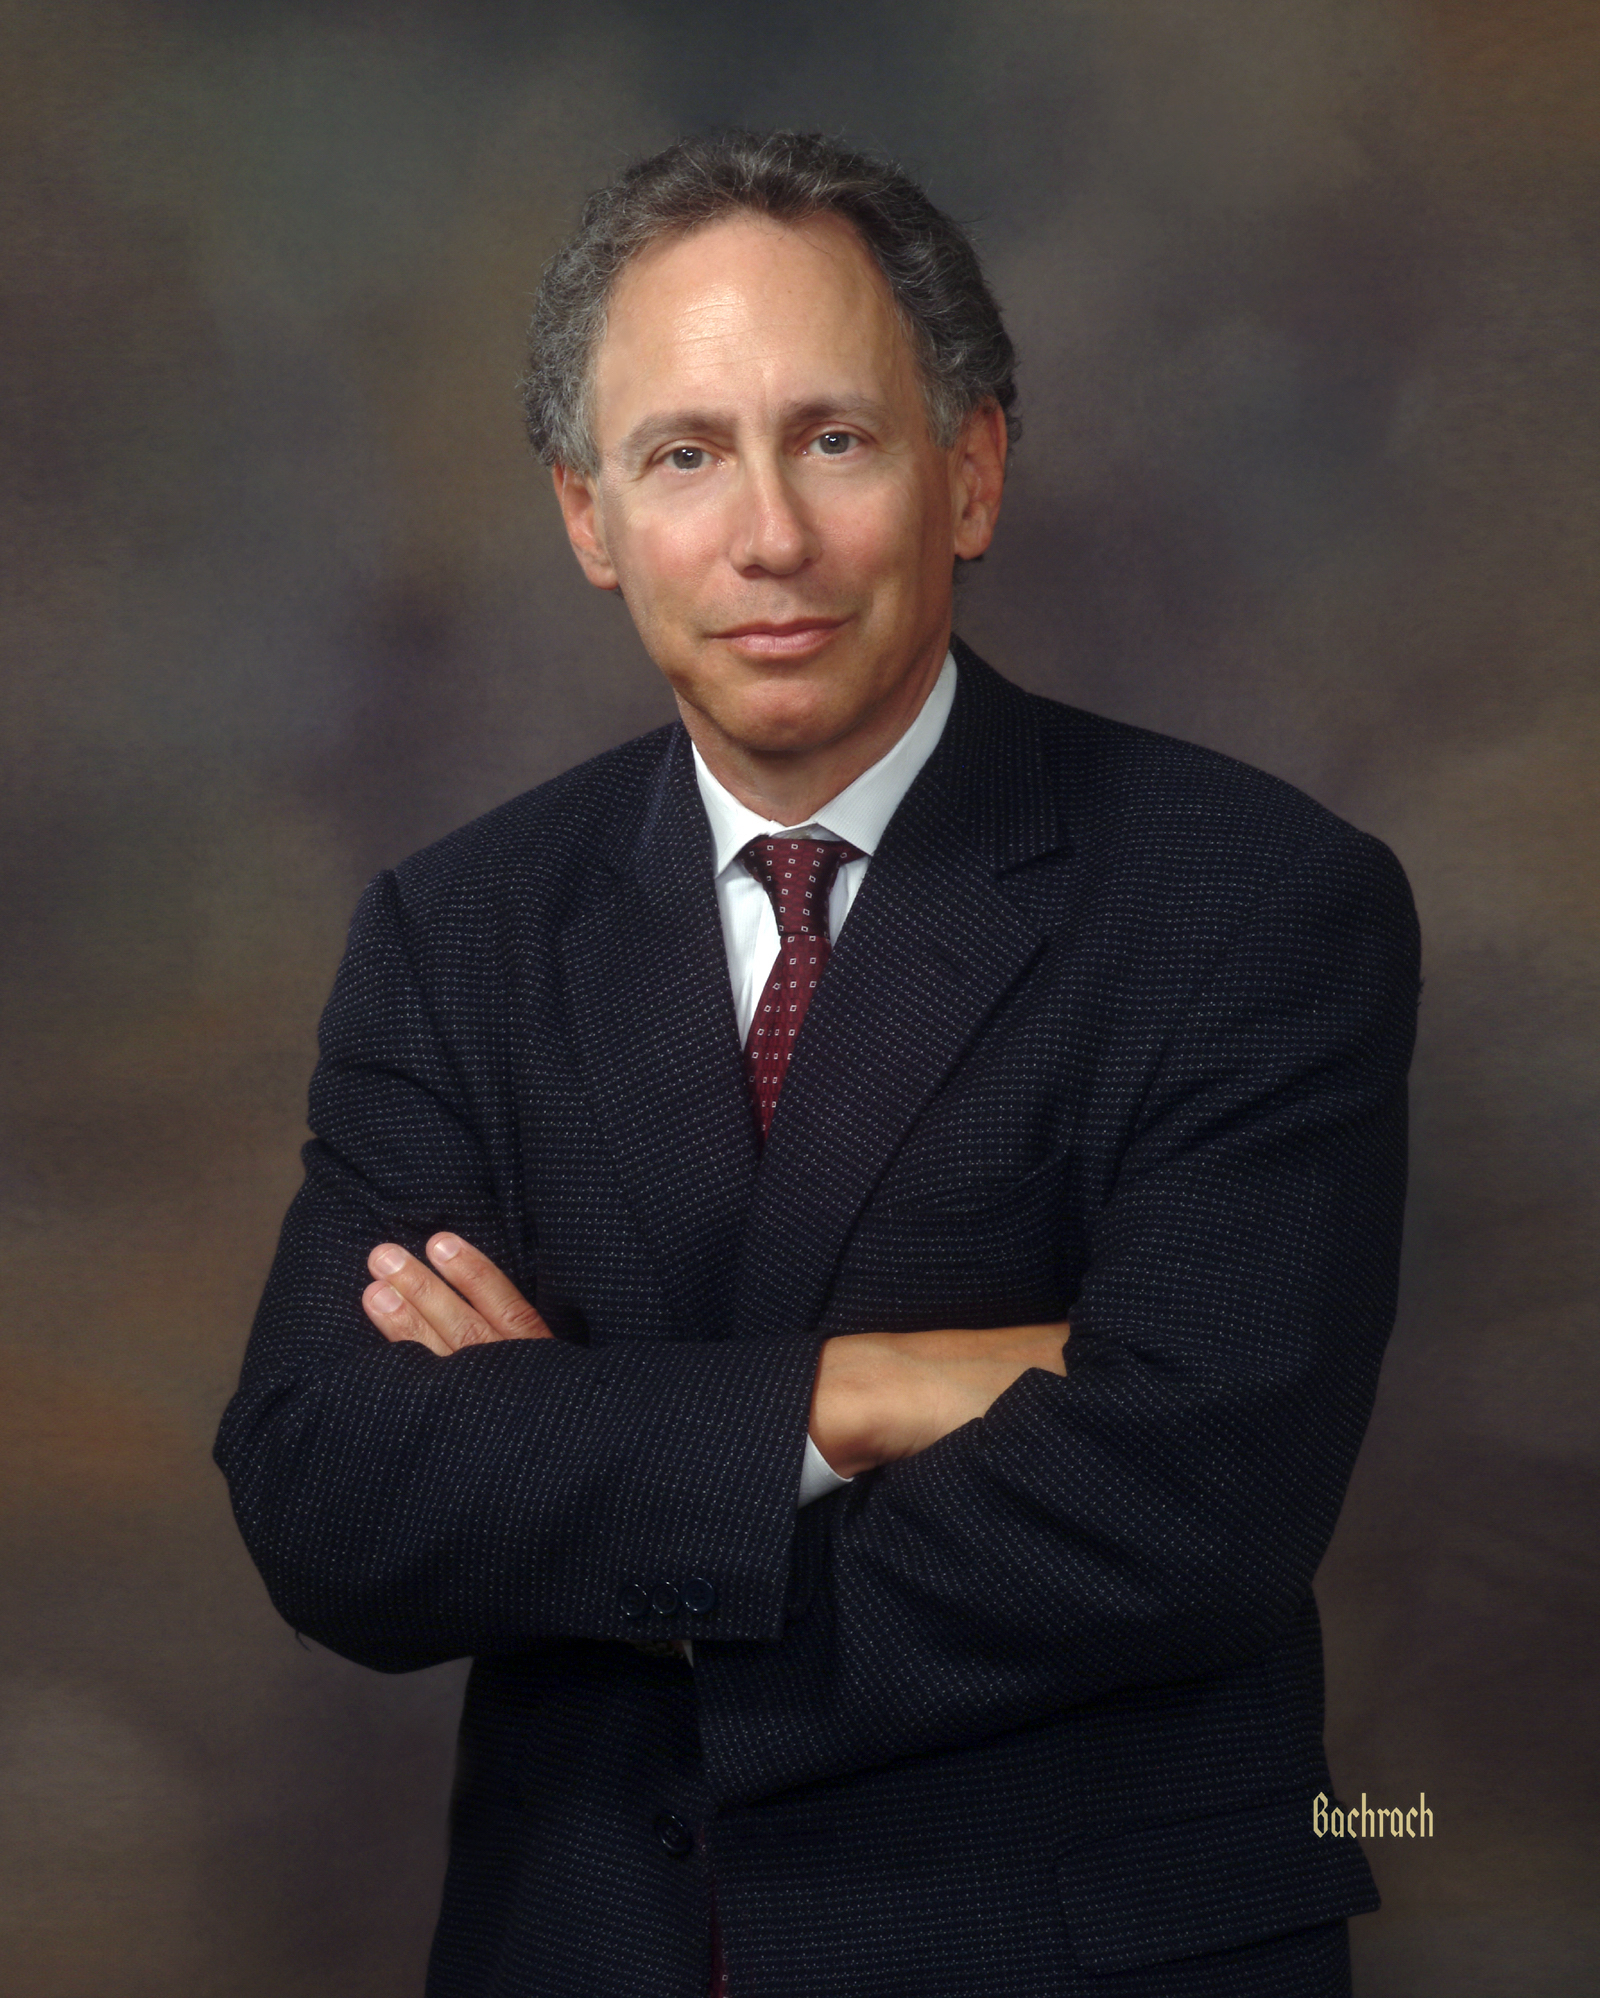 Institute Professor Robert Langer, MIT